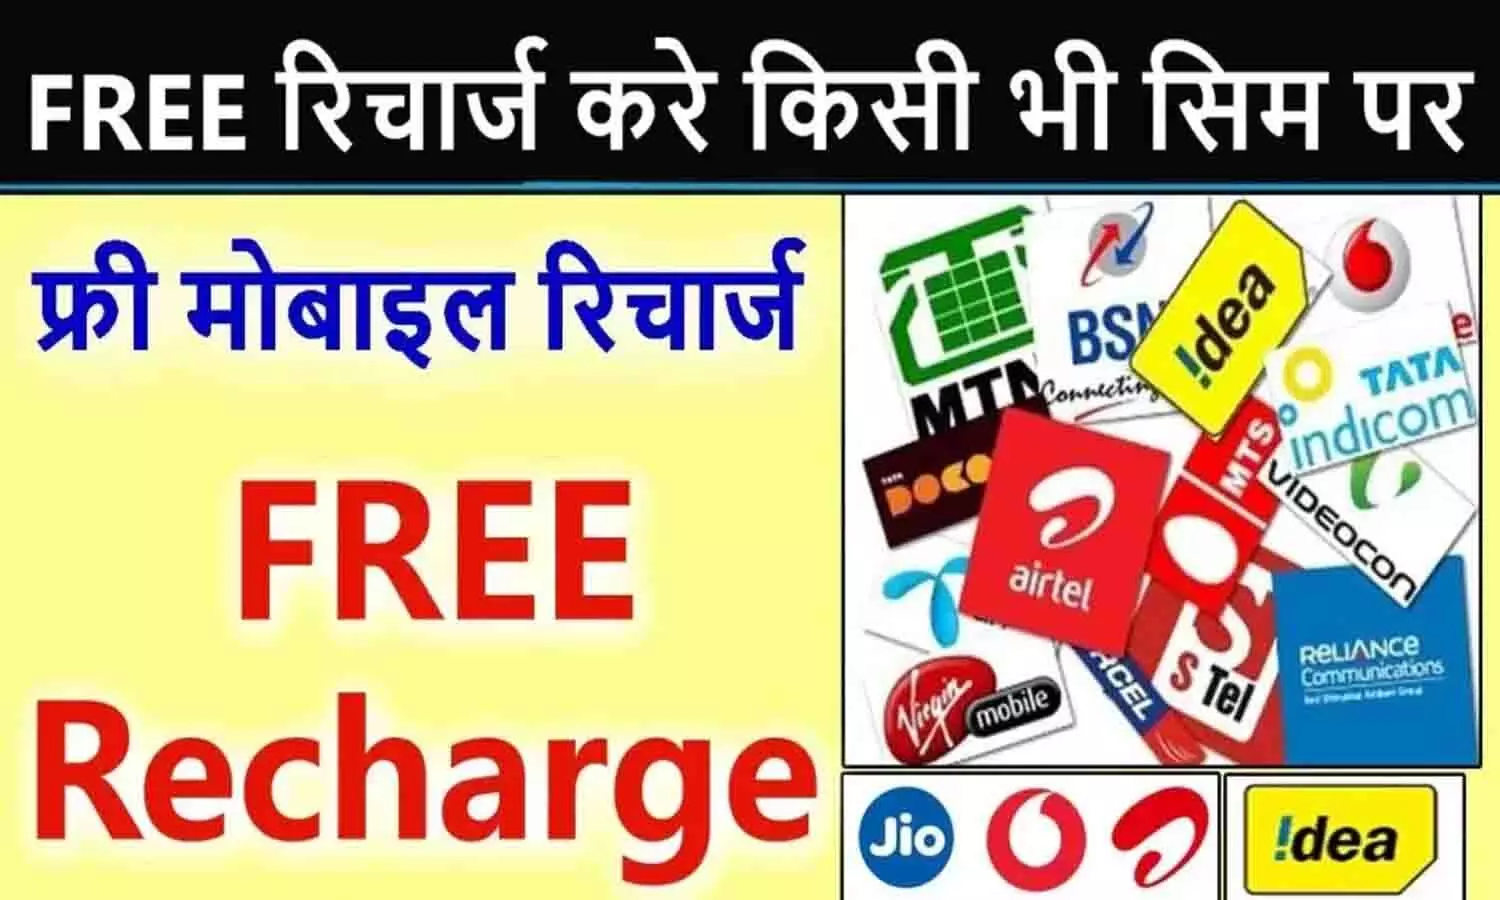 Gkgsinhindi Free Recharge: महंगे रिचार्ज से मिलगा छुटकारा! Airtel, Jio, BSNL और VI के ग्राहकों को मिलेगा फ्री मोबाइल रिचार्ज? फटाफट जाने पूरी Details